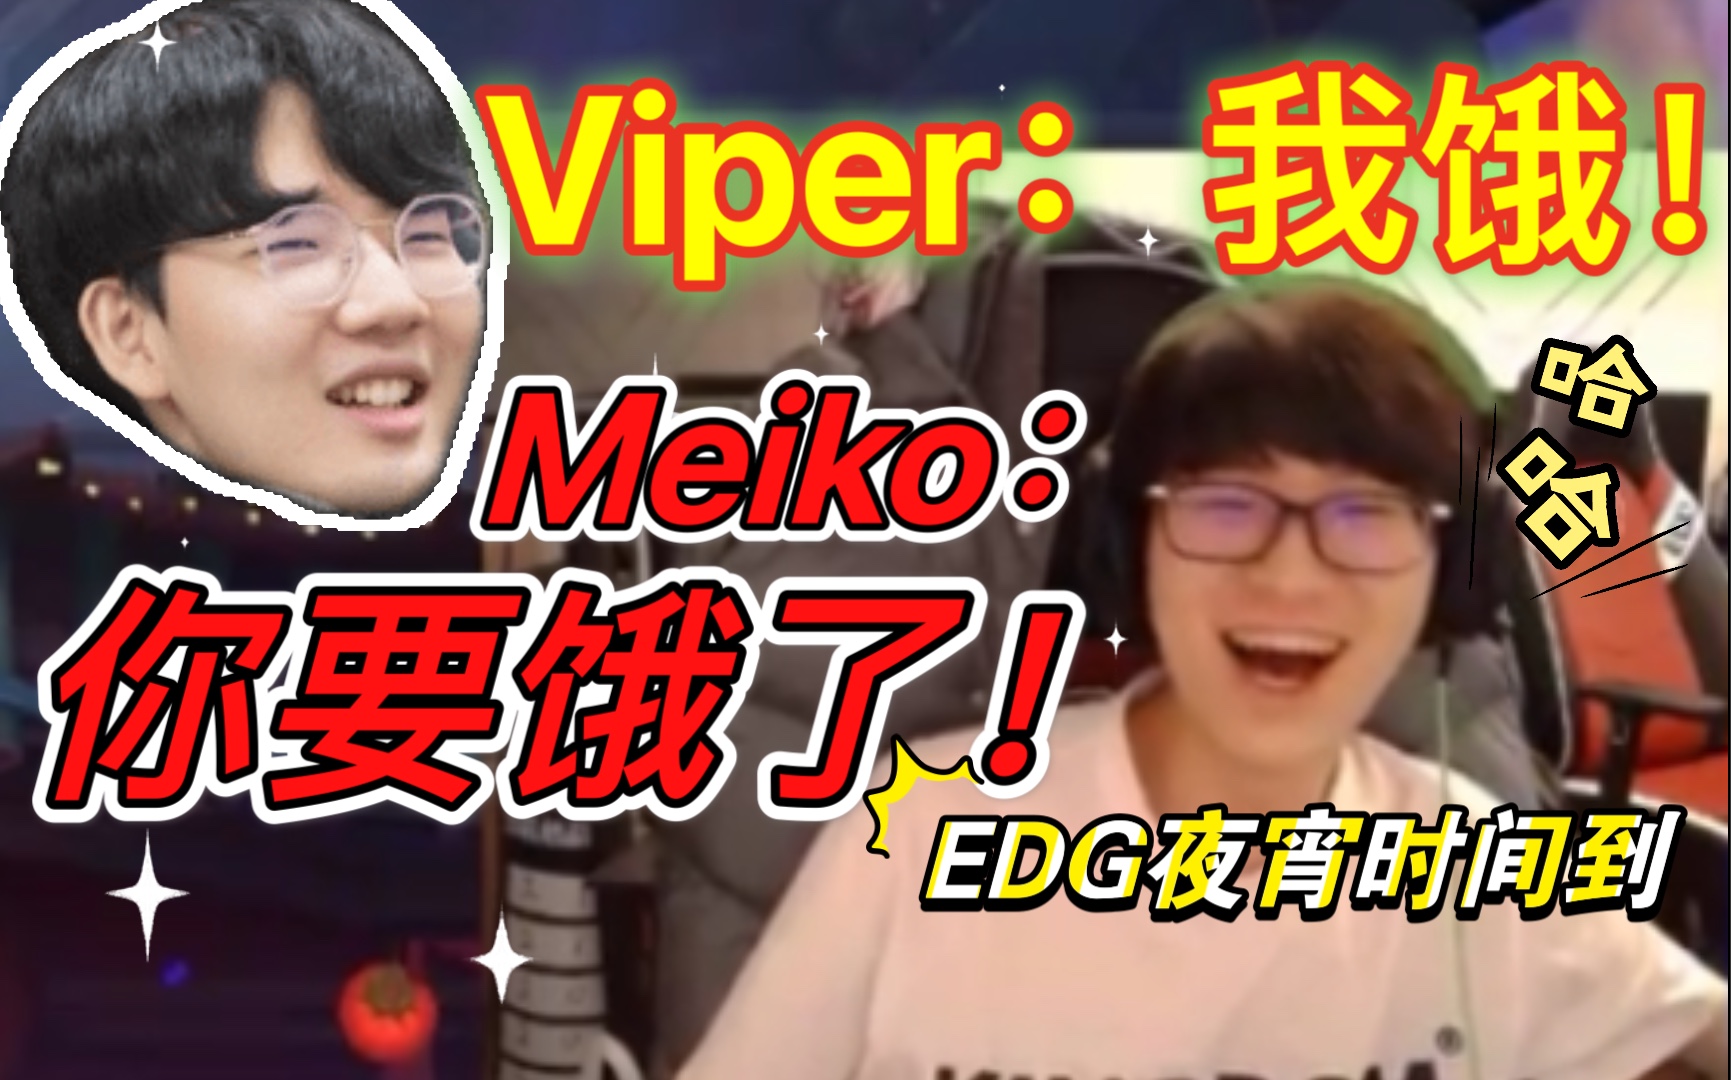 【EDG全员干饭人6】Meiko：你要饿了，Viper：我要饿吗？我饿！｜EDG火锅局走起